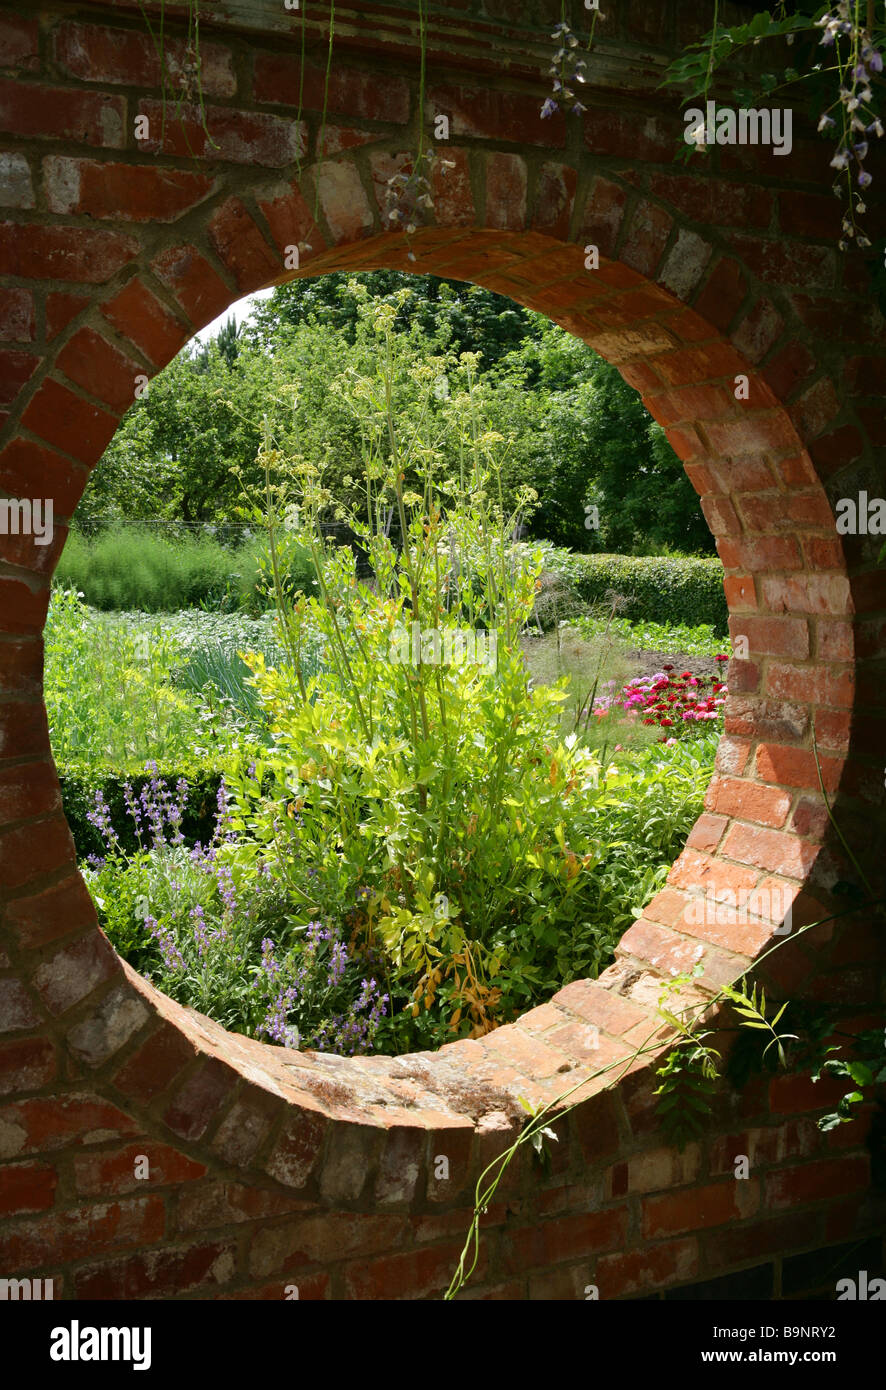 View through a circle hole in a bricked garden wall into a summer garden. Stock Photo